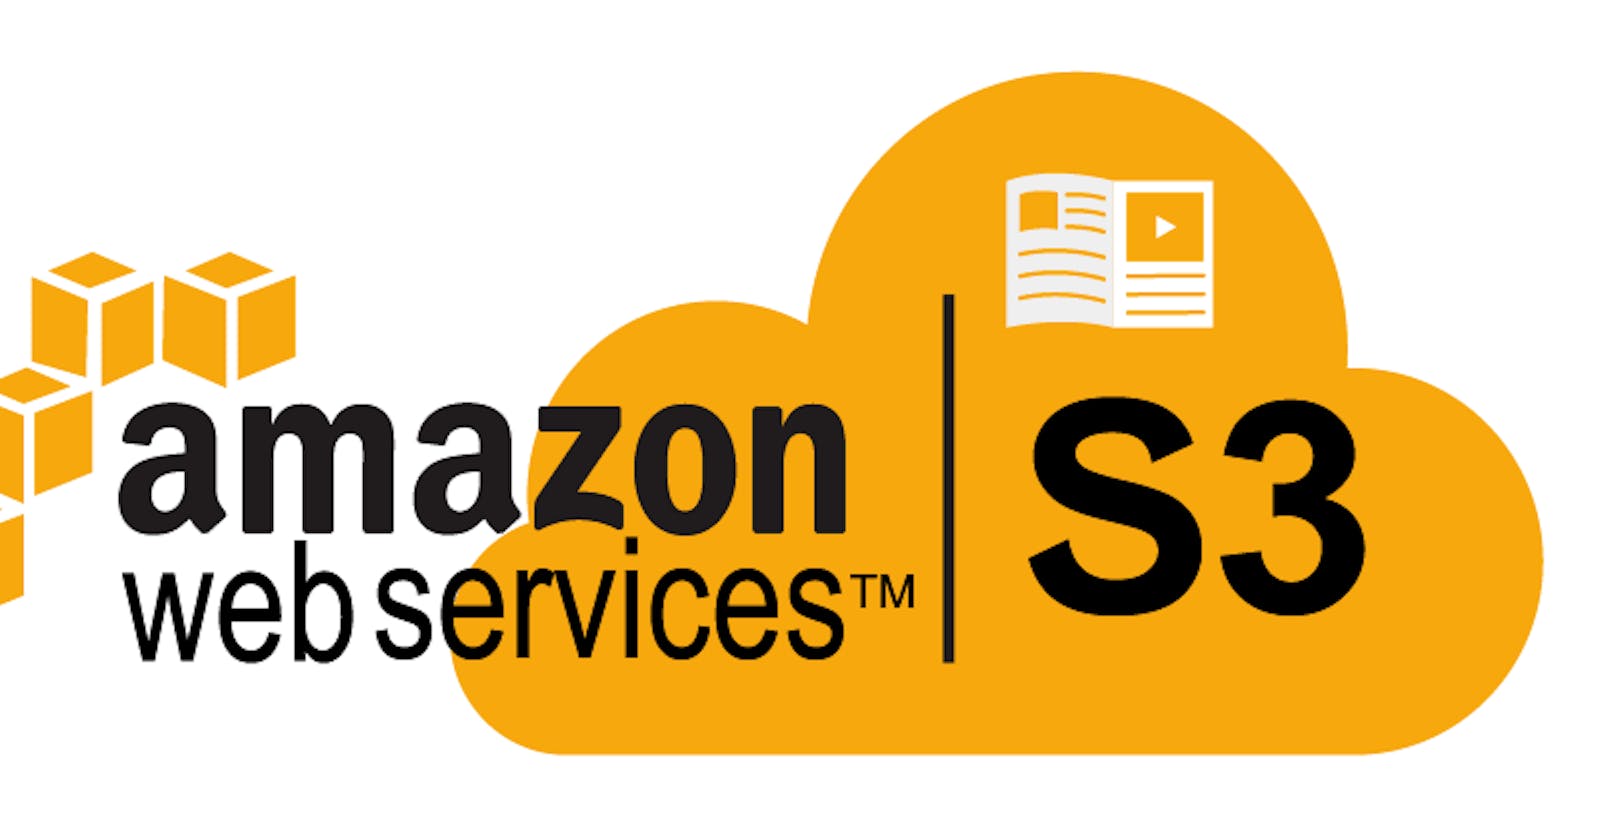 Amazon Simple Storage Service (Amazon S3)